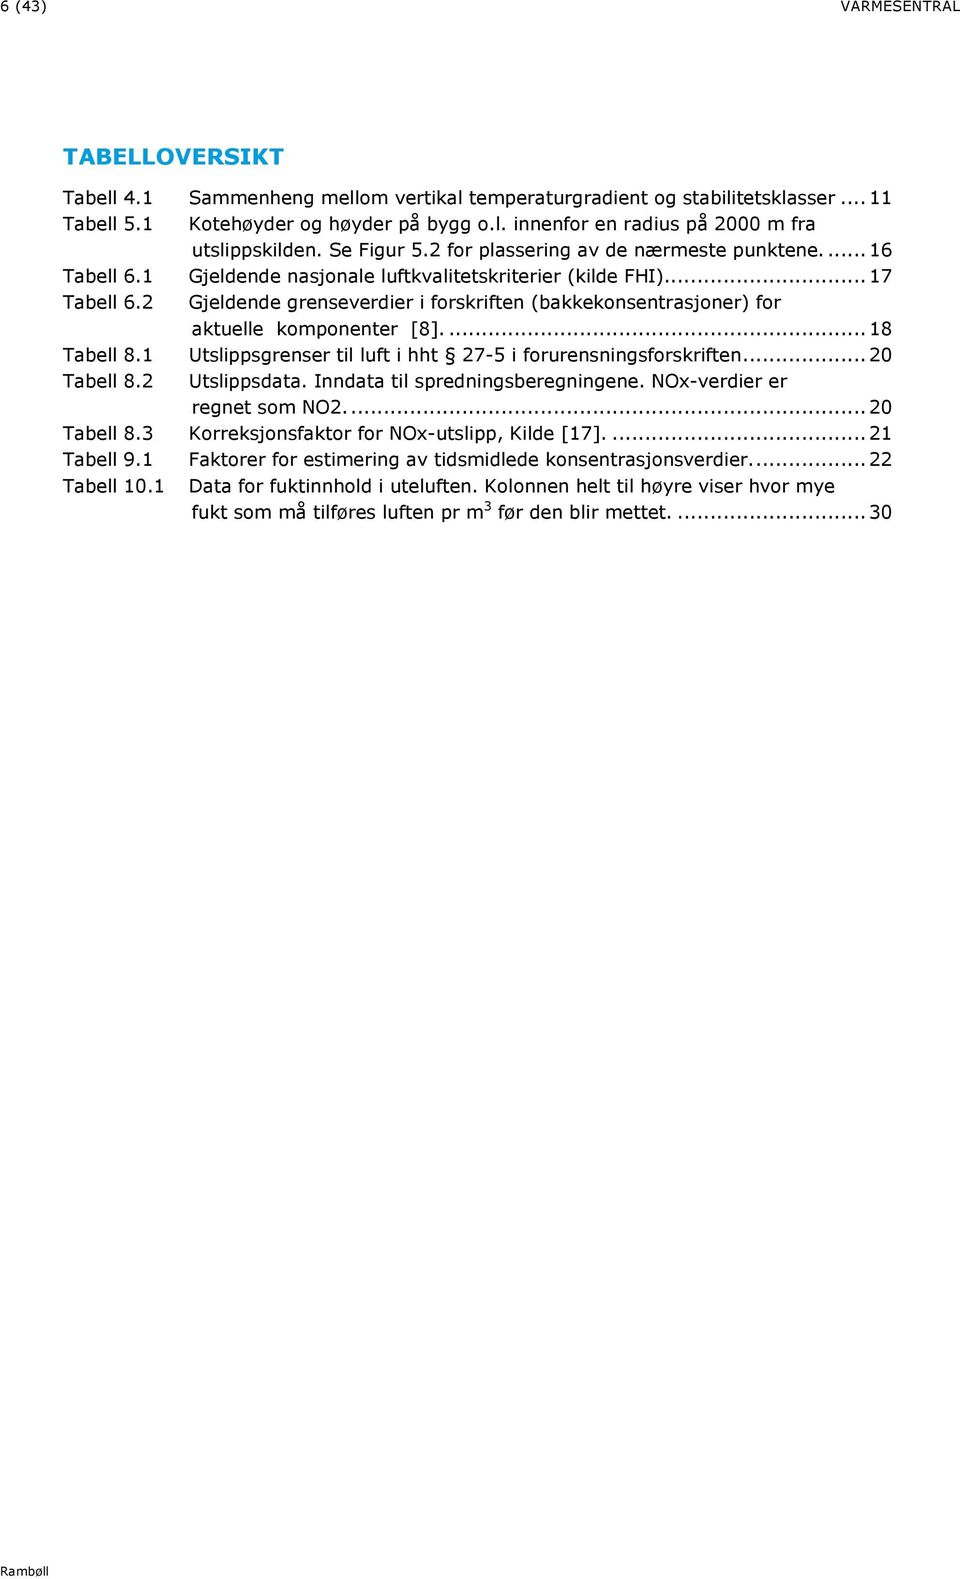 2 Gjeldende grenseverdier i forskriften (bakkekonsentrasjoner) for aktuelle komponenter [8].... 18 Tabell 8.1 Utslippsgrenser til luft i hht 27-5 i forurensningsforskriften... 20 Tabell 8.